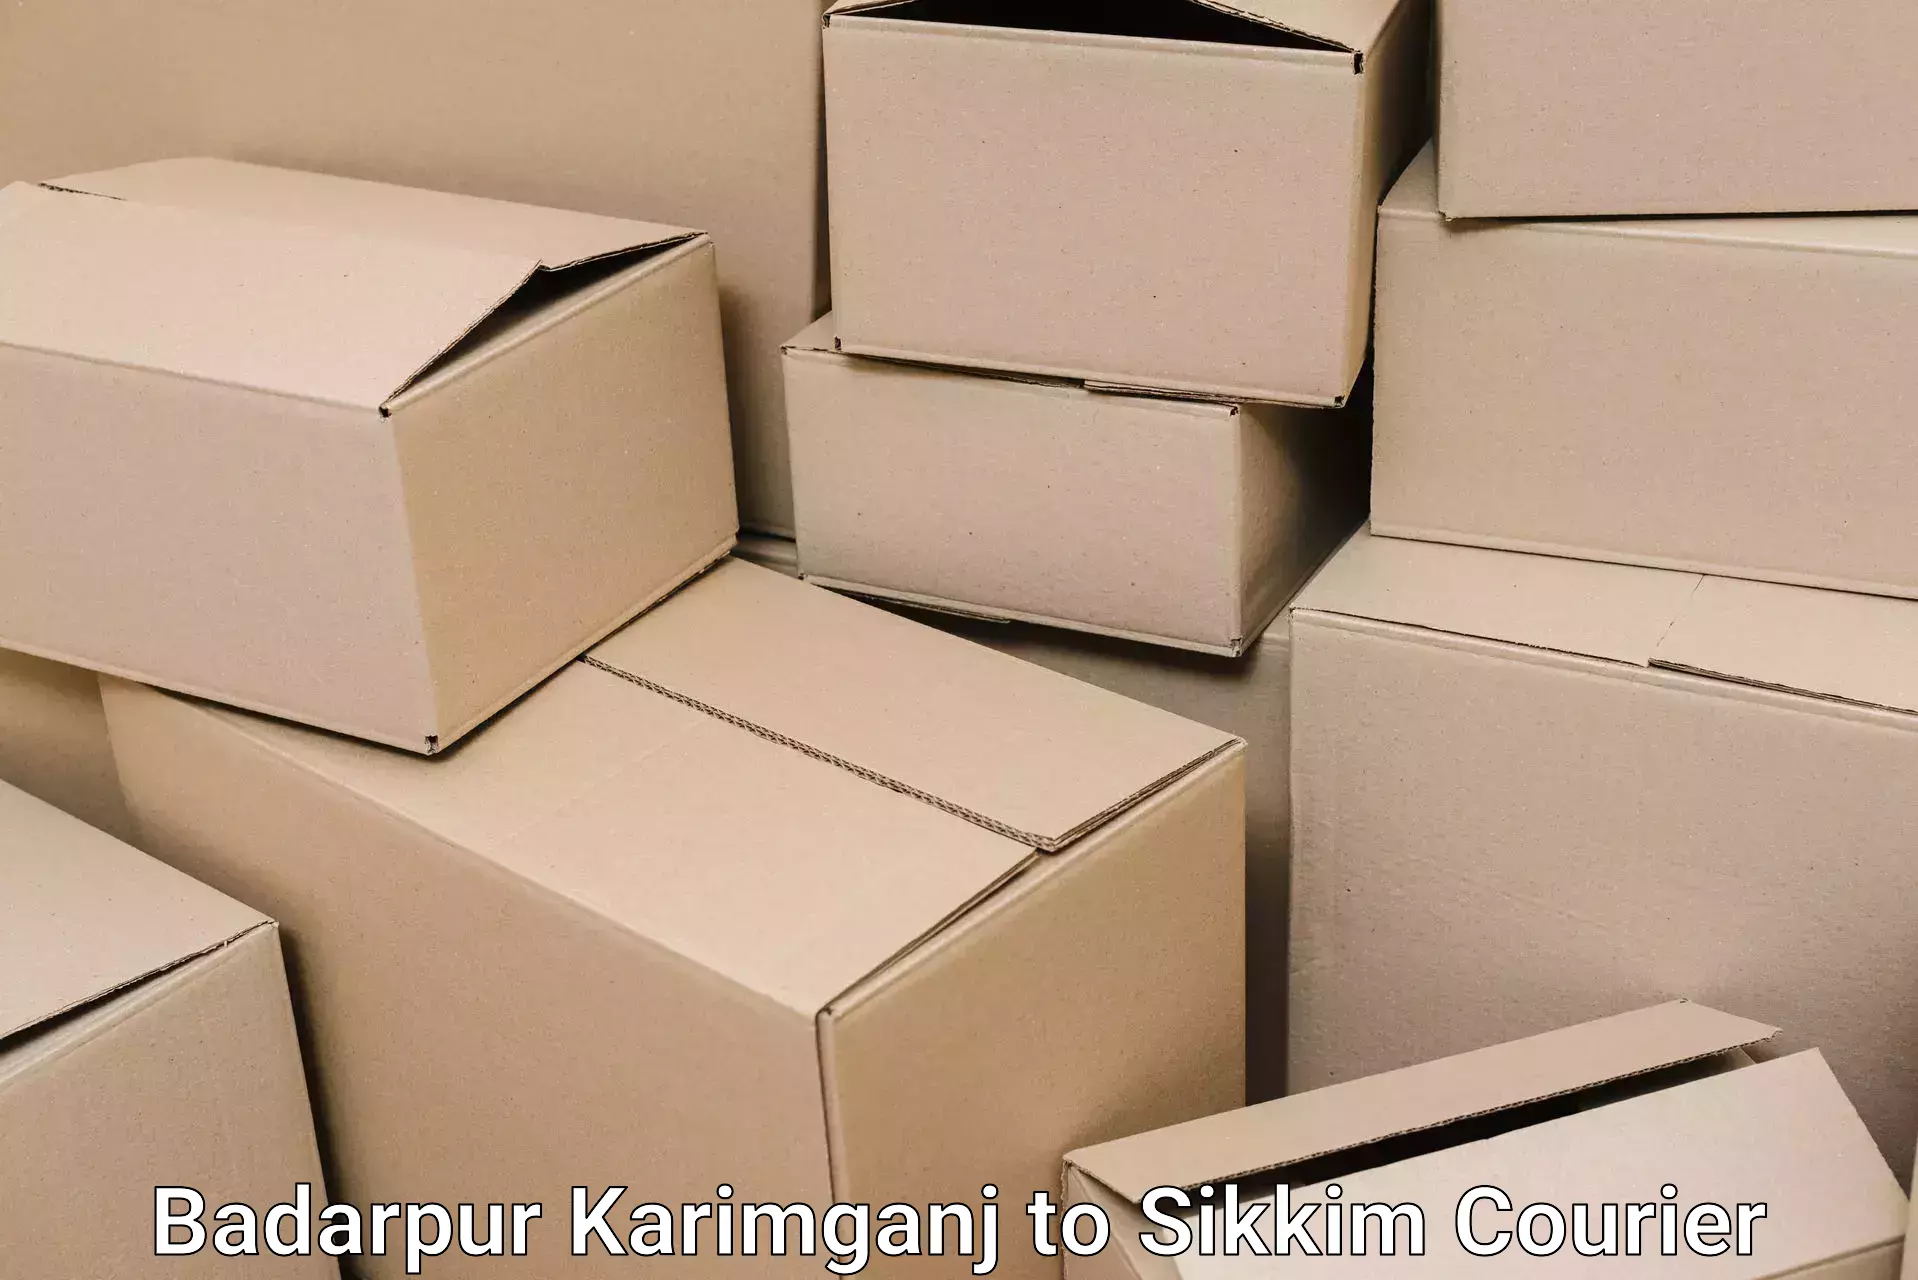 Affordable home movers Badarpur Karimganj to Jorethang